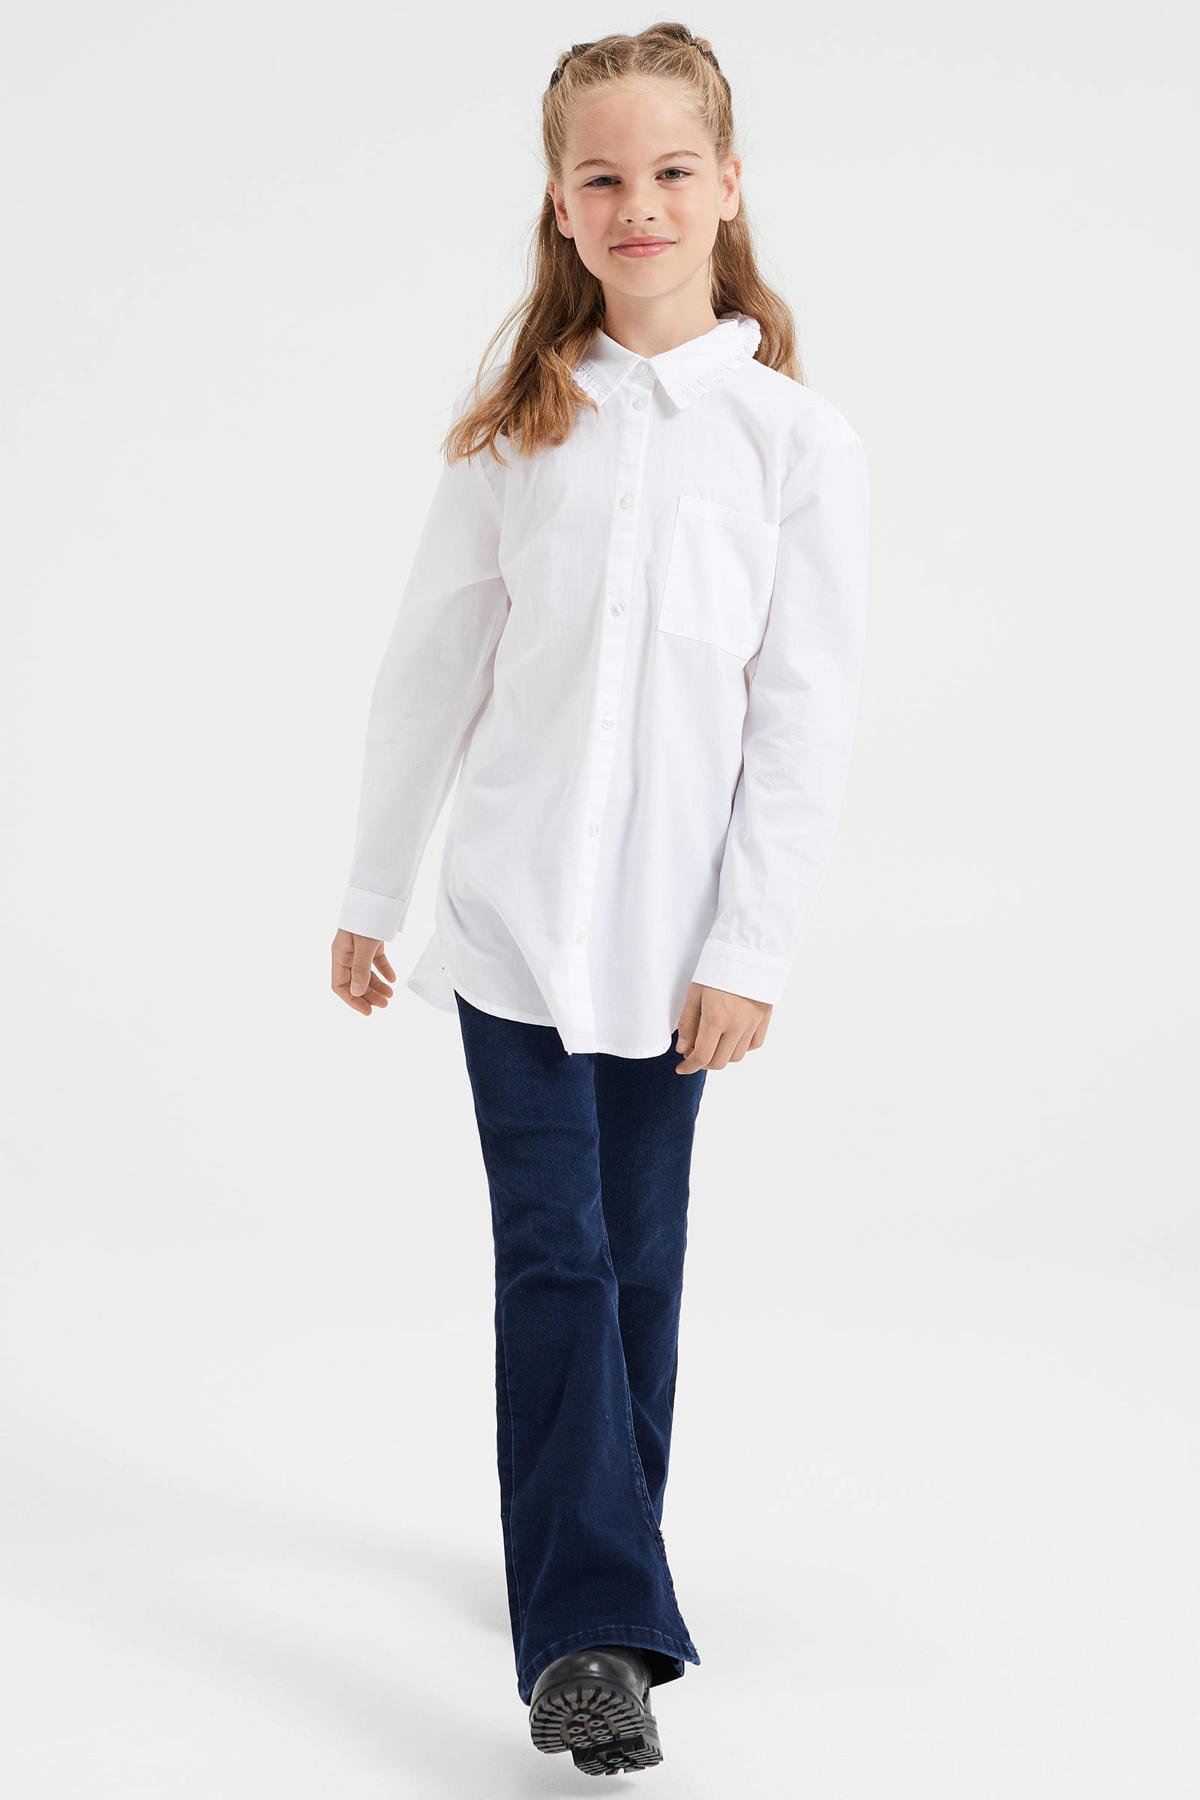 Vooruit Betrokken Bijdrager WE Fashion blouse wit kopen? | Morgen in huis | wehkamp